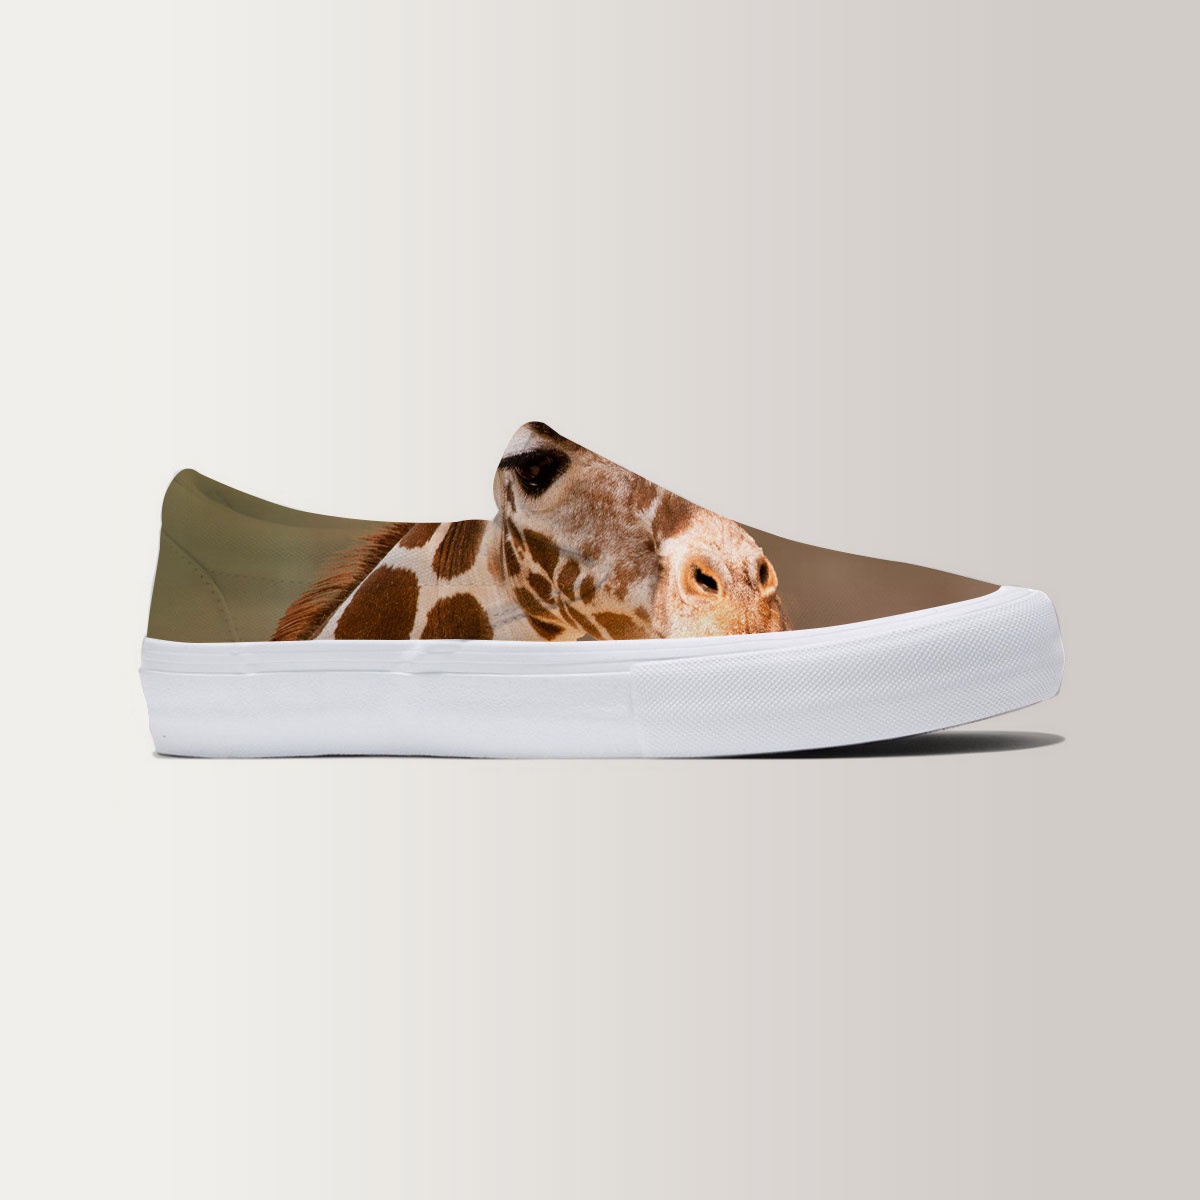 Giraffe Slip On Sneakers